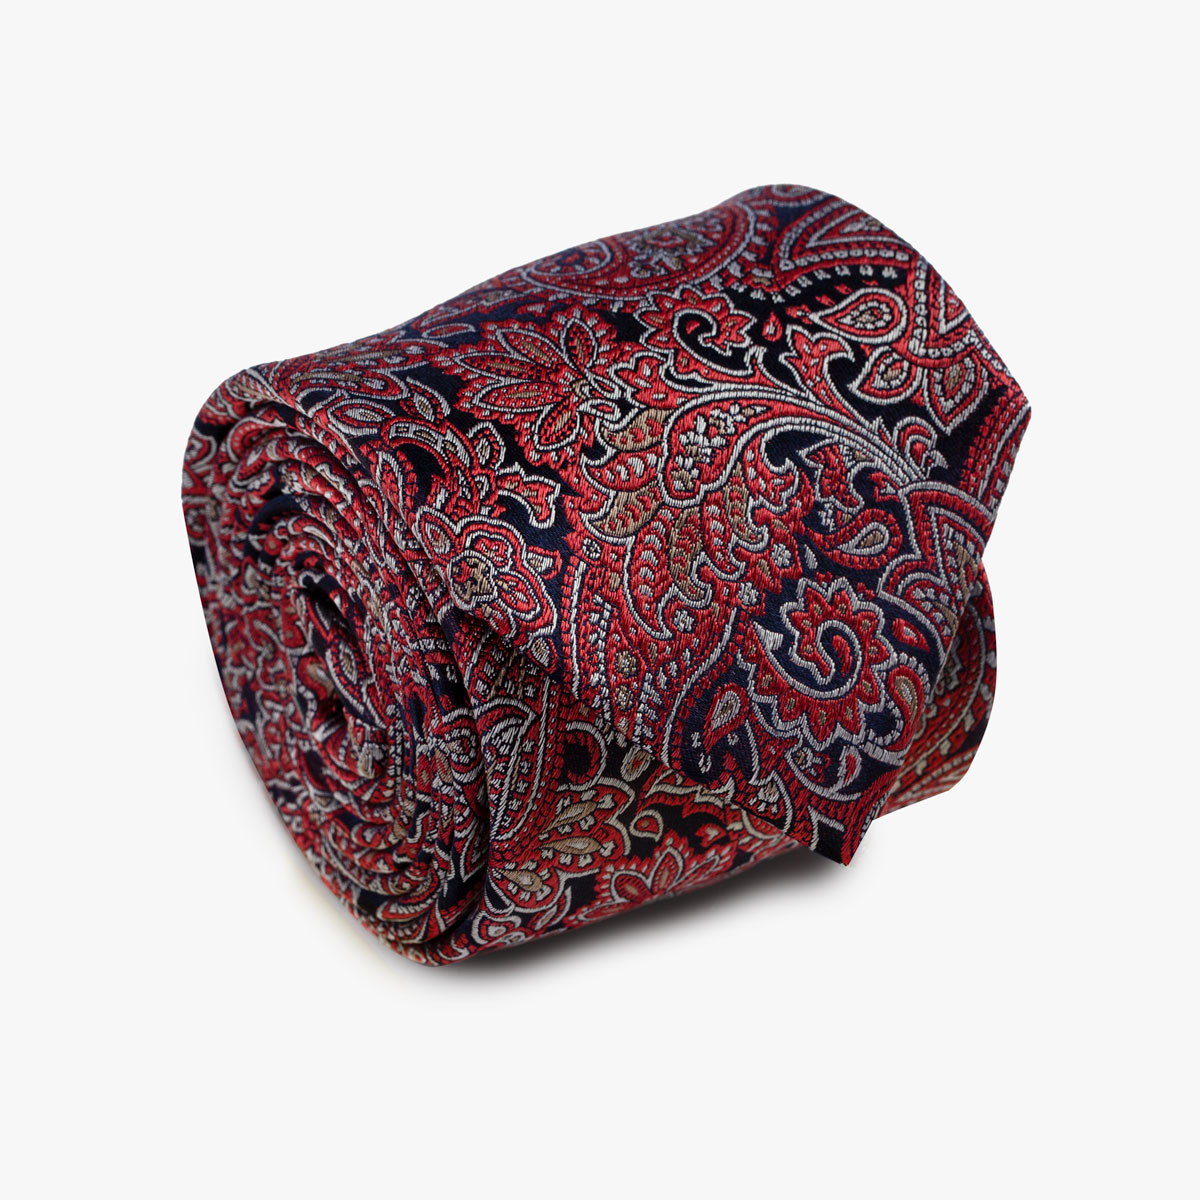 Aufgerollte Krawatte mit Paisley-Muster in rot und blau